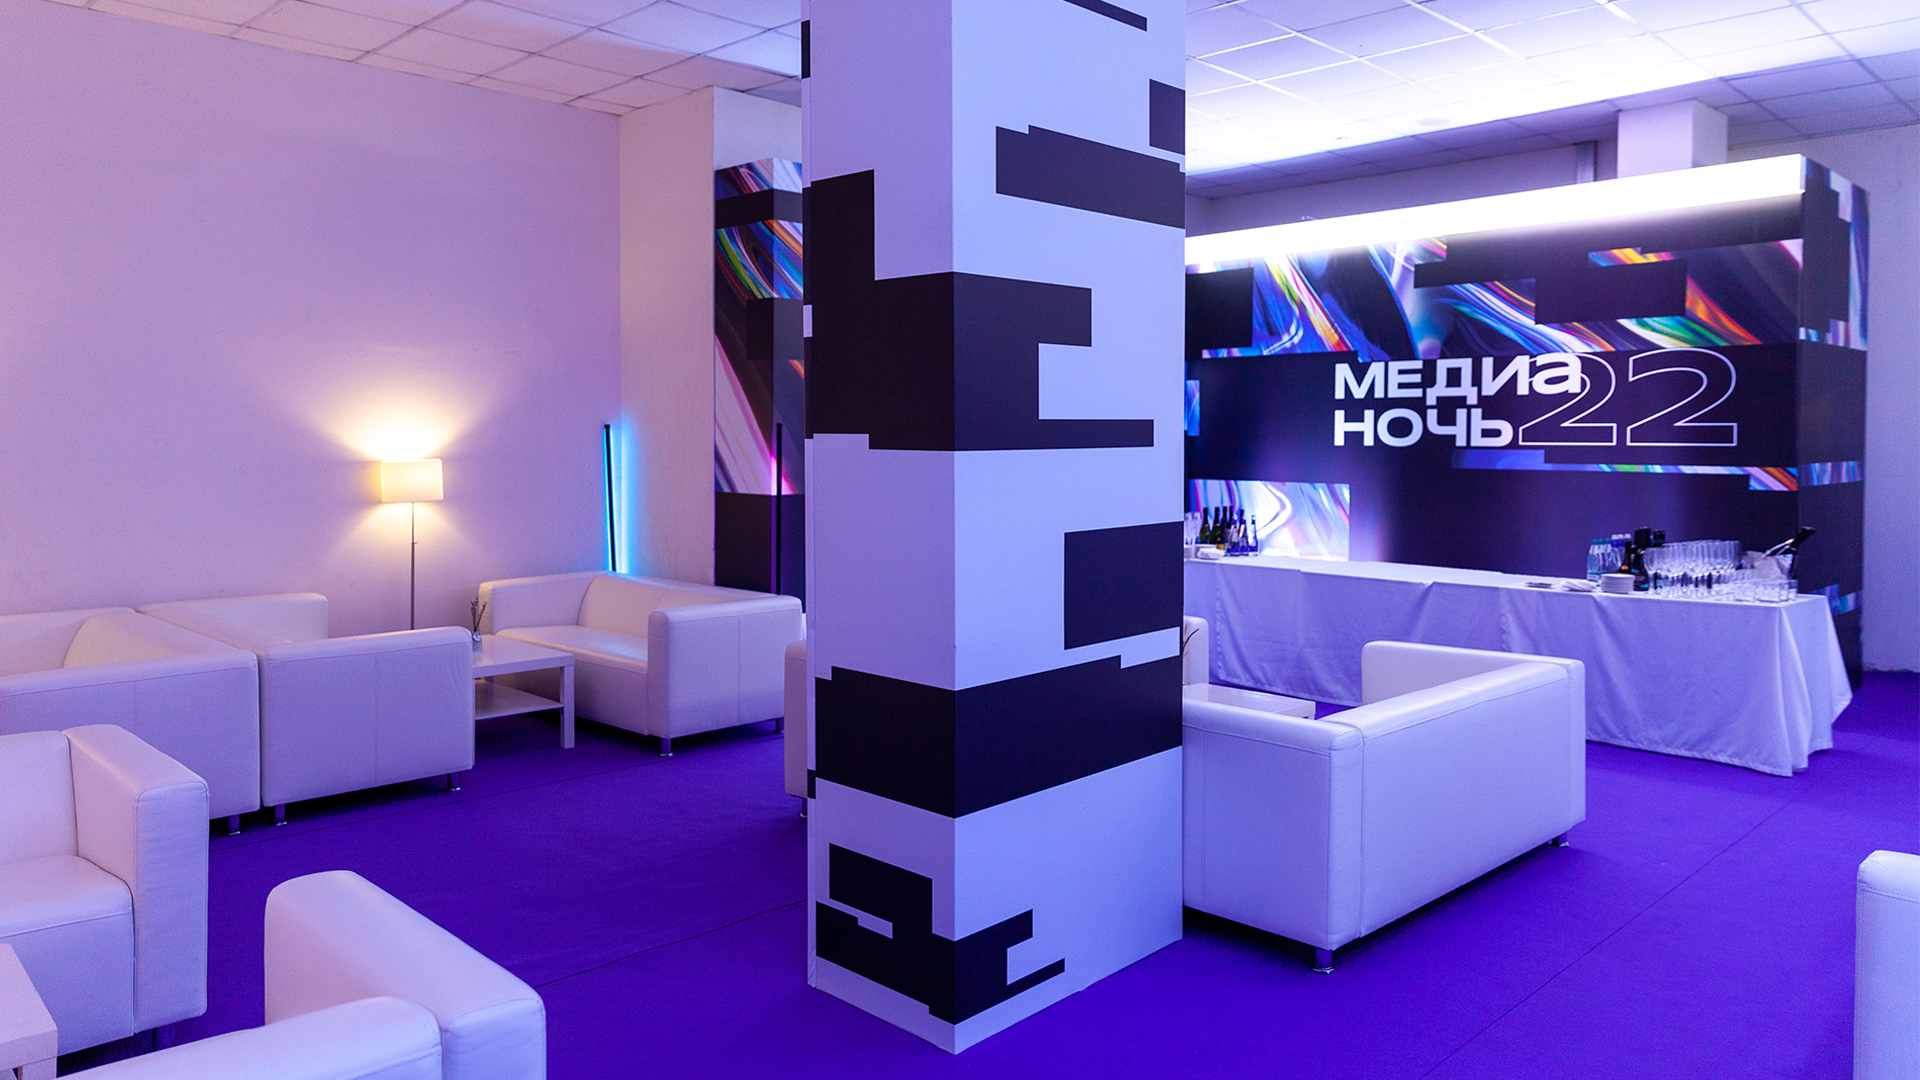 Медиа ночь 2022 событие — проект Лаборатории развития